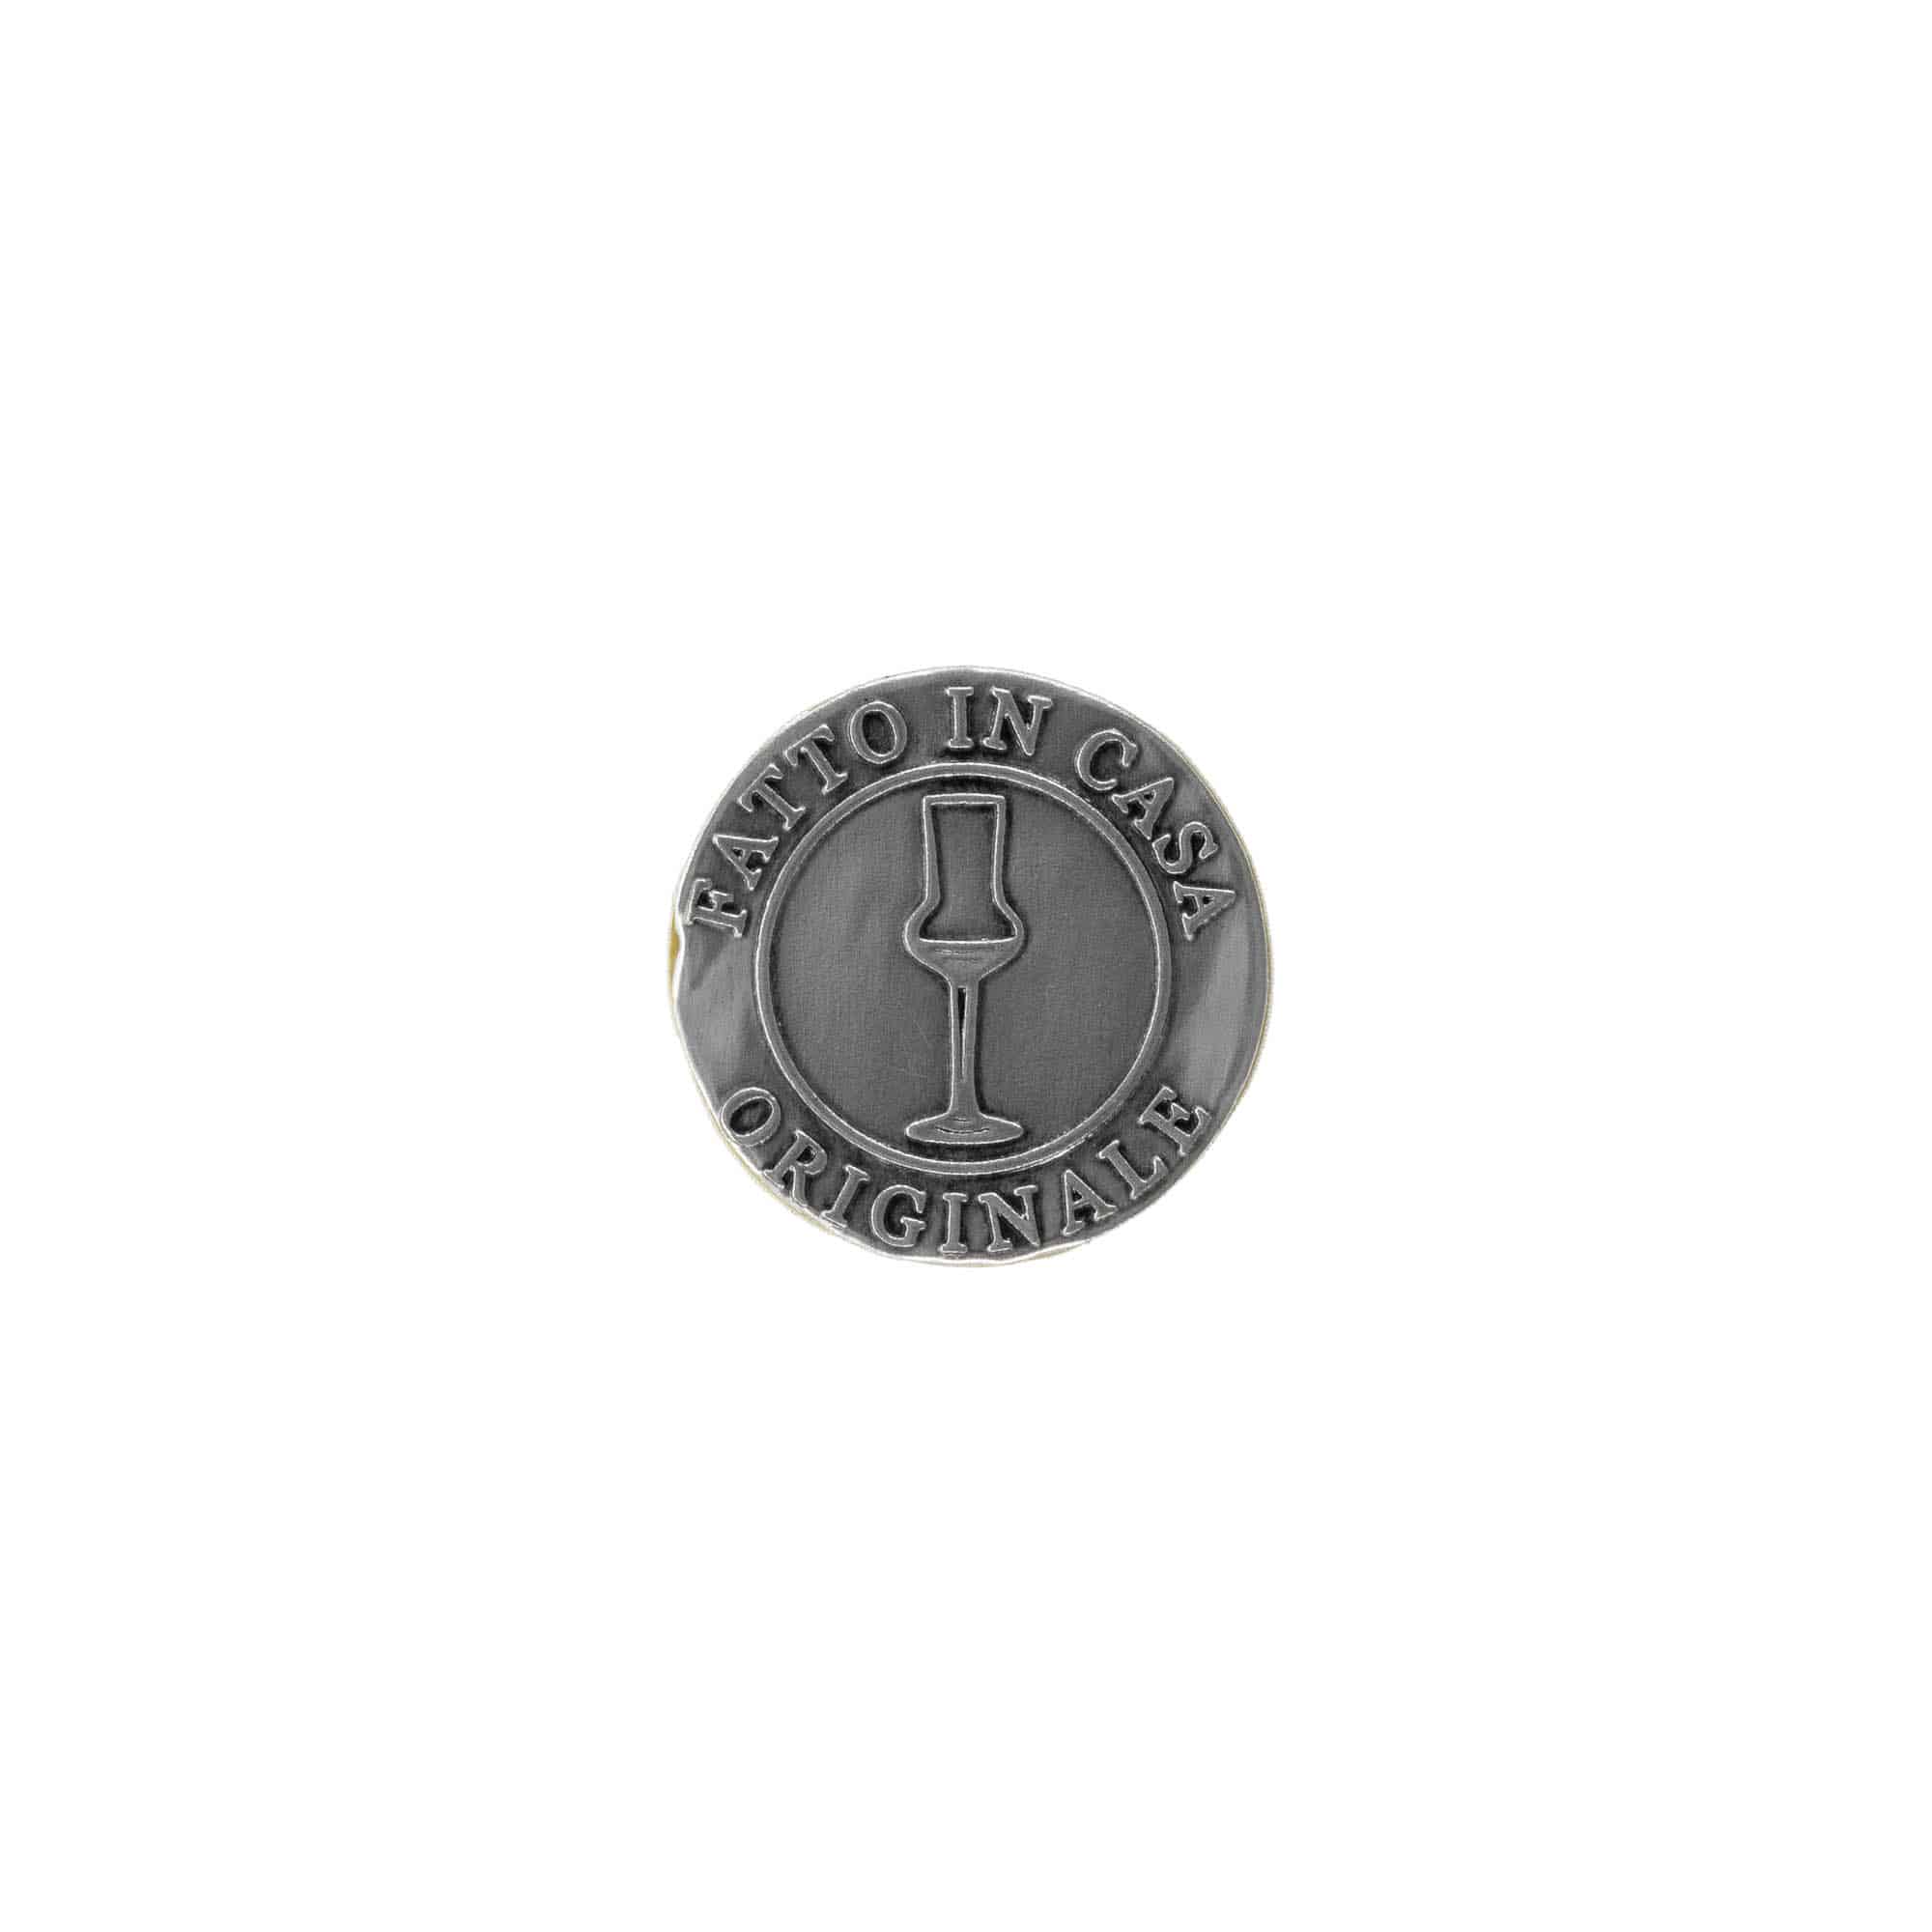 Etykieta cynowa 'Fatto in Casa', okrągła, metal, kolor srebrny